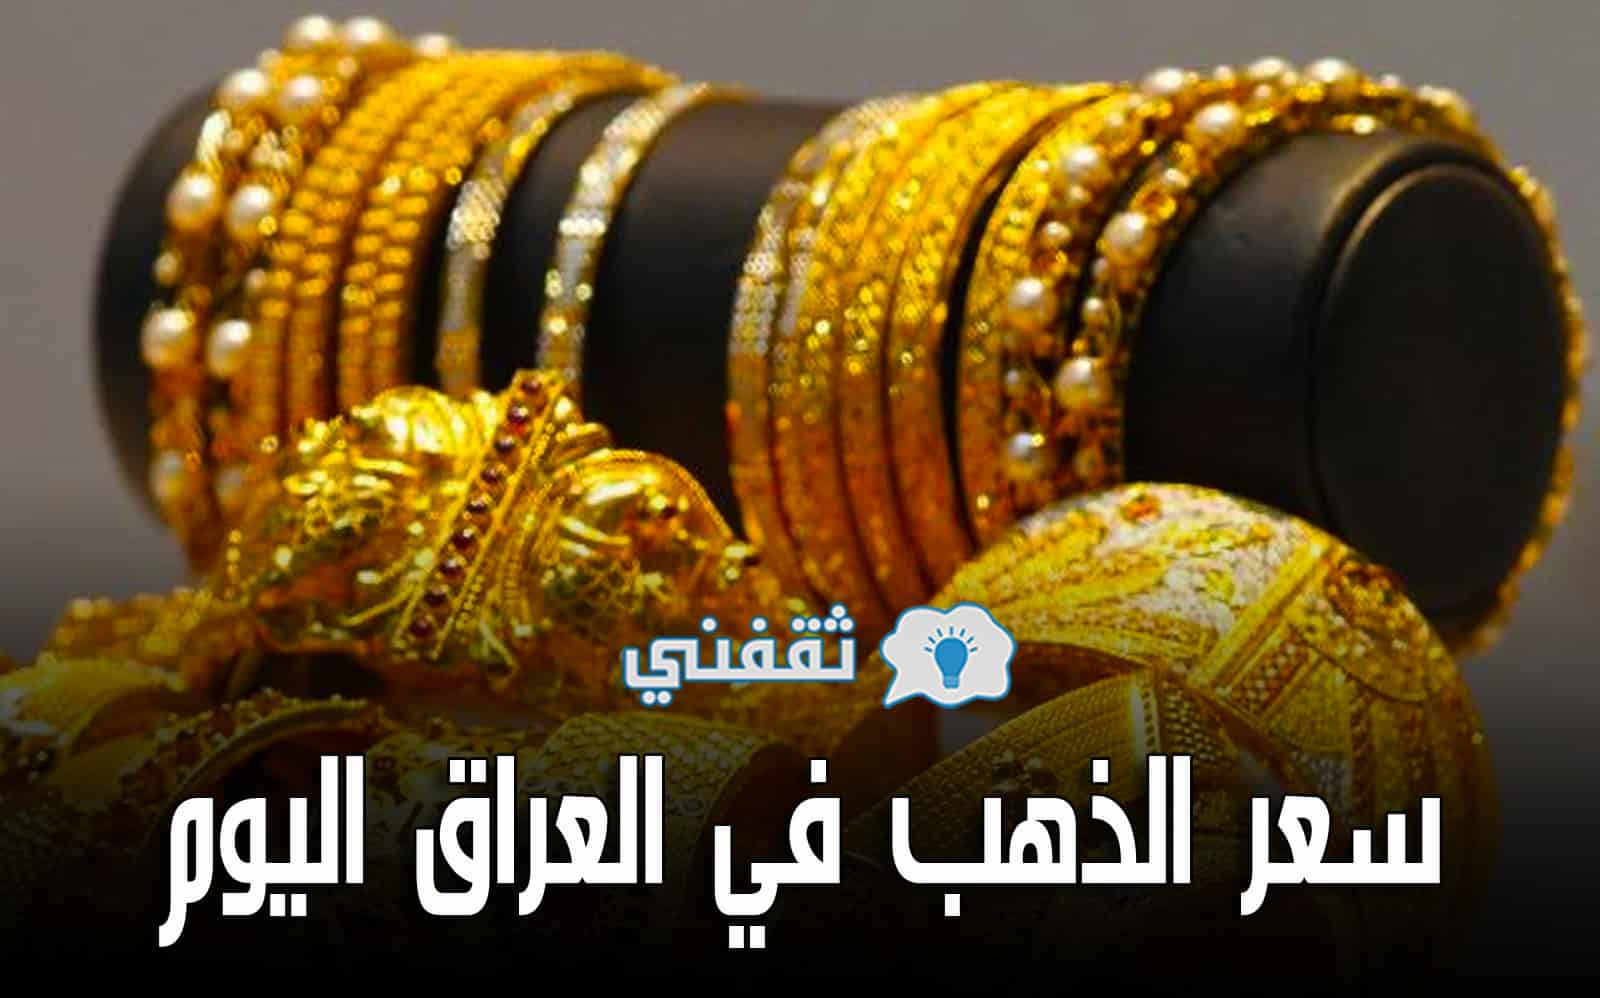 ارتفاع سعر الذهب في العراق اليوم الجمعة 7 آيار | أسعار مثقال الذهب بيع وشراء في محافظة بغداد وإربيل